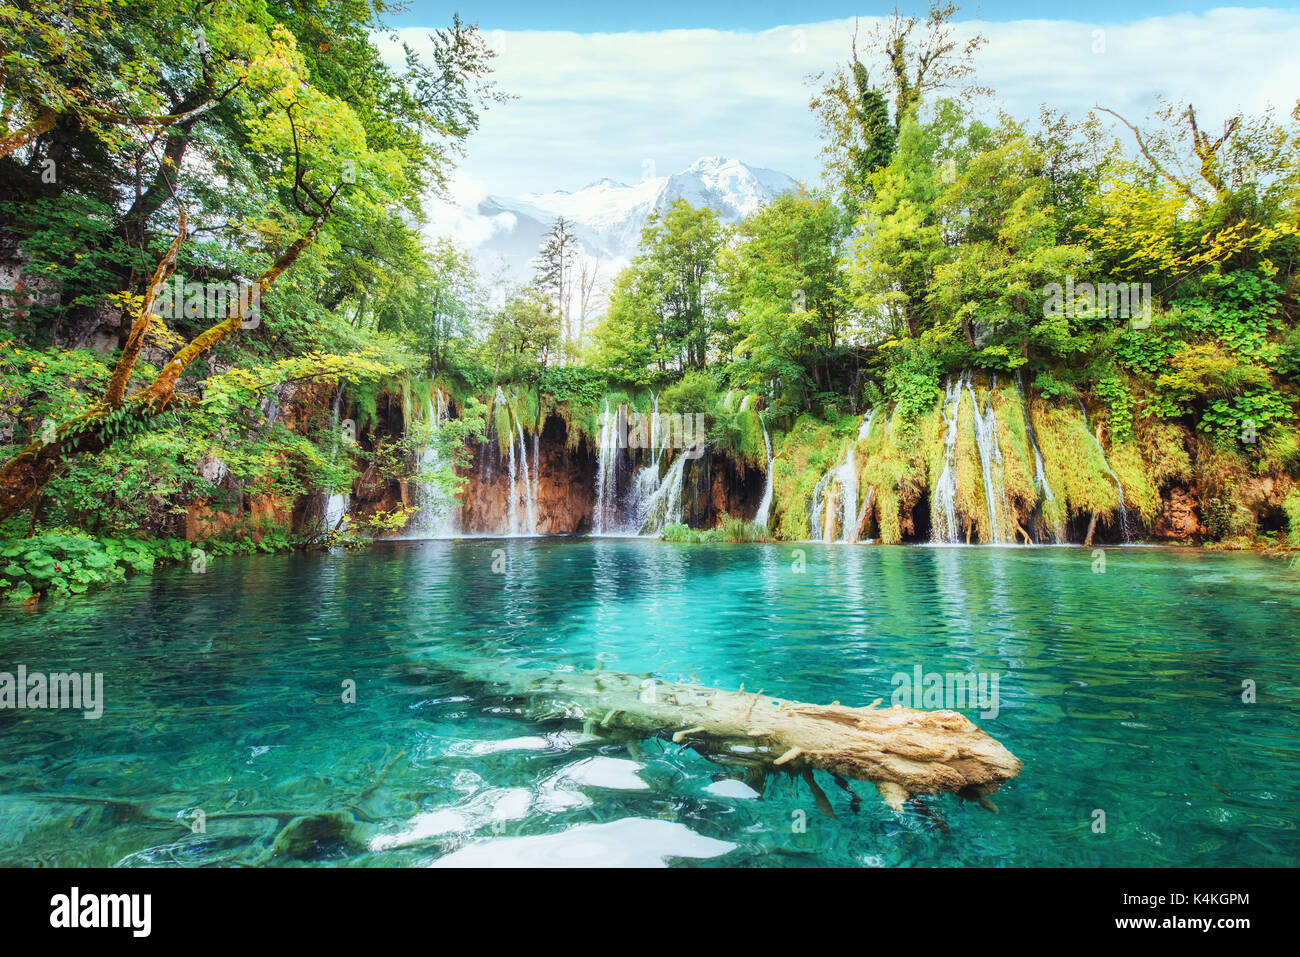 Una foto dei pesci che nuotano in un lago, preso nel parco nazionale dei Laghi di Plitvice in Croazia Foto Stock